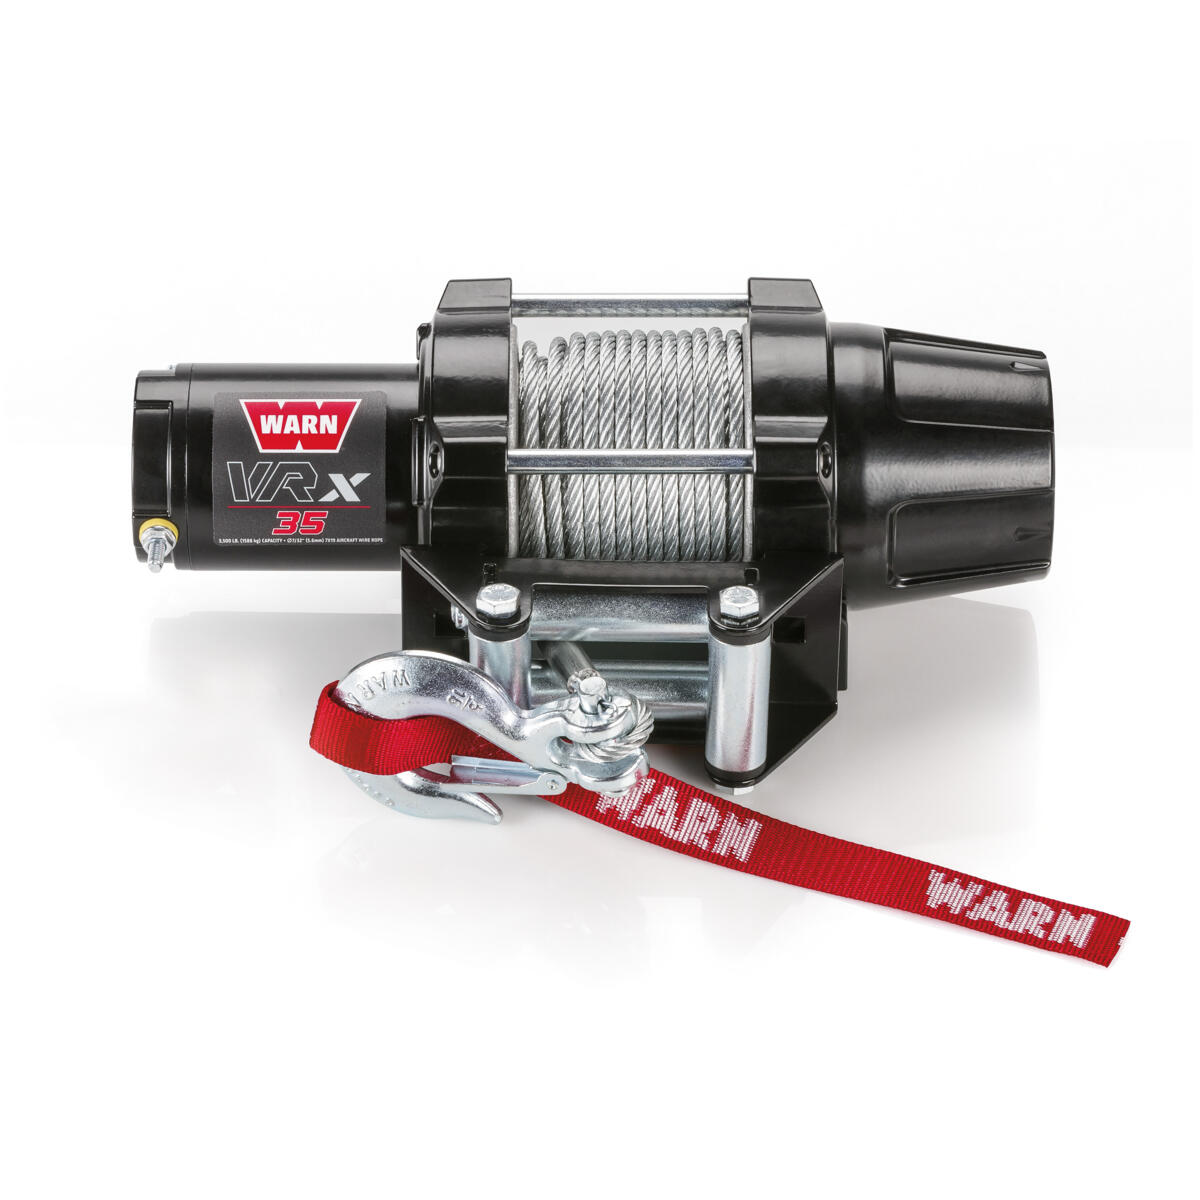 WARN® VRX Winch er konstruert i helmetall, med et 15,24 meter lang stålvajer, og inkluderer den nye clutchen utviklet fra WARN® 4WD navlås design.